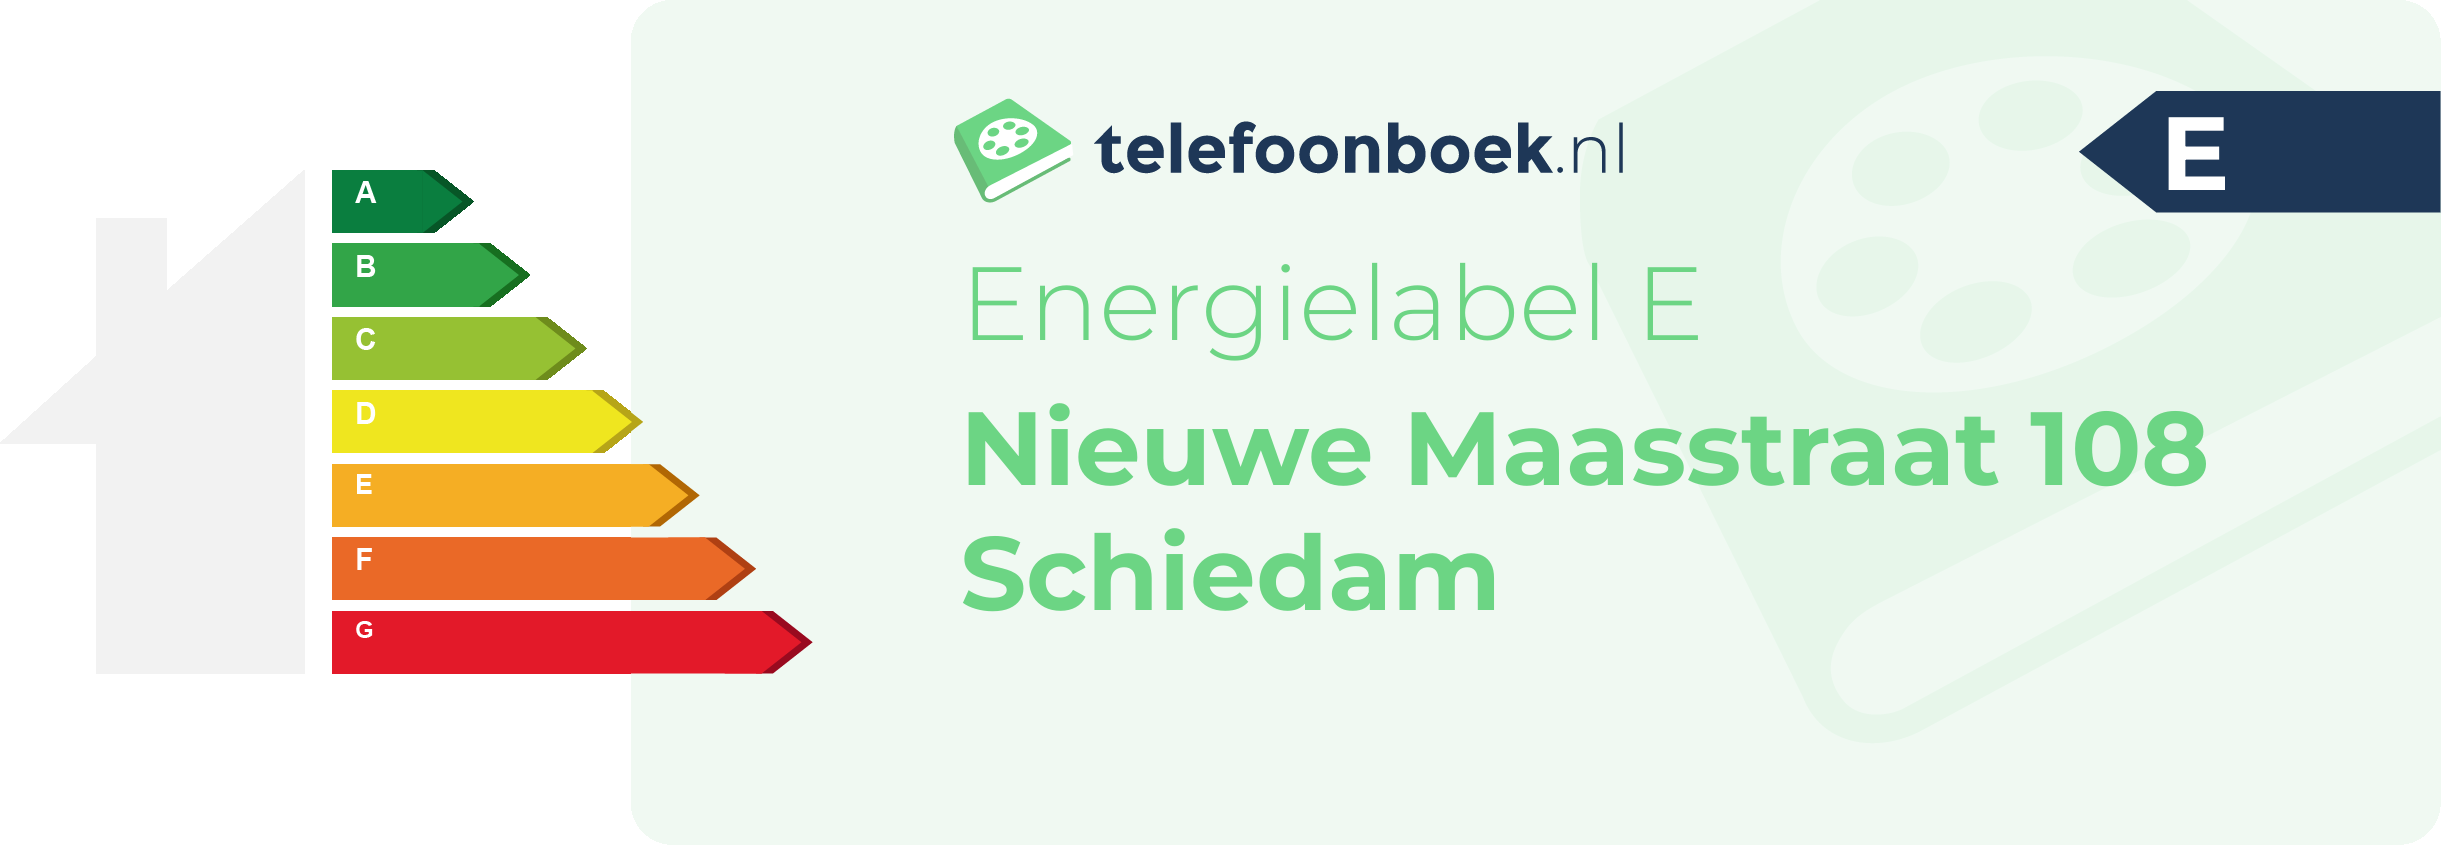 Energielabel Nieuwe Maasstraat 108 Schiedam